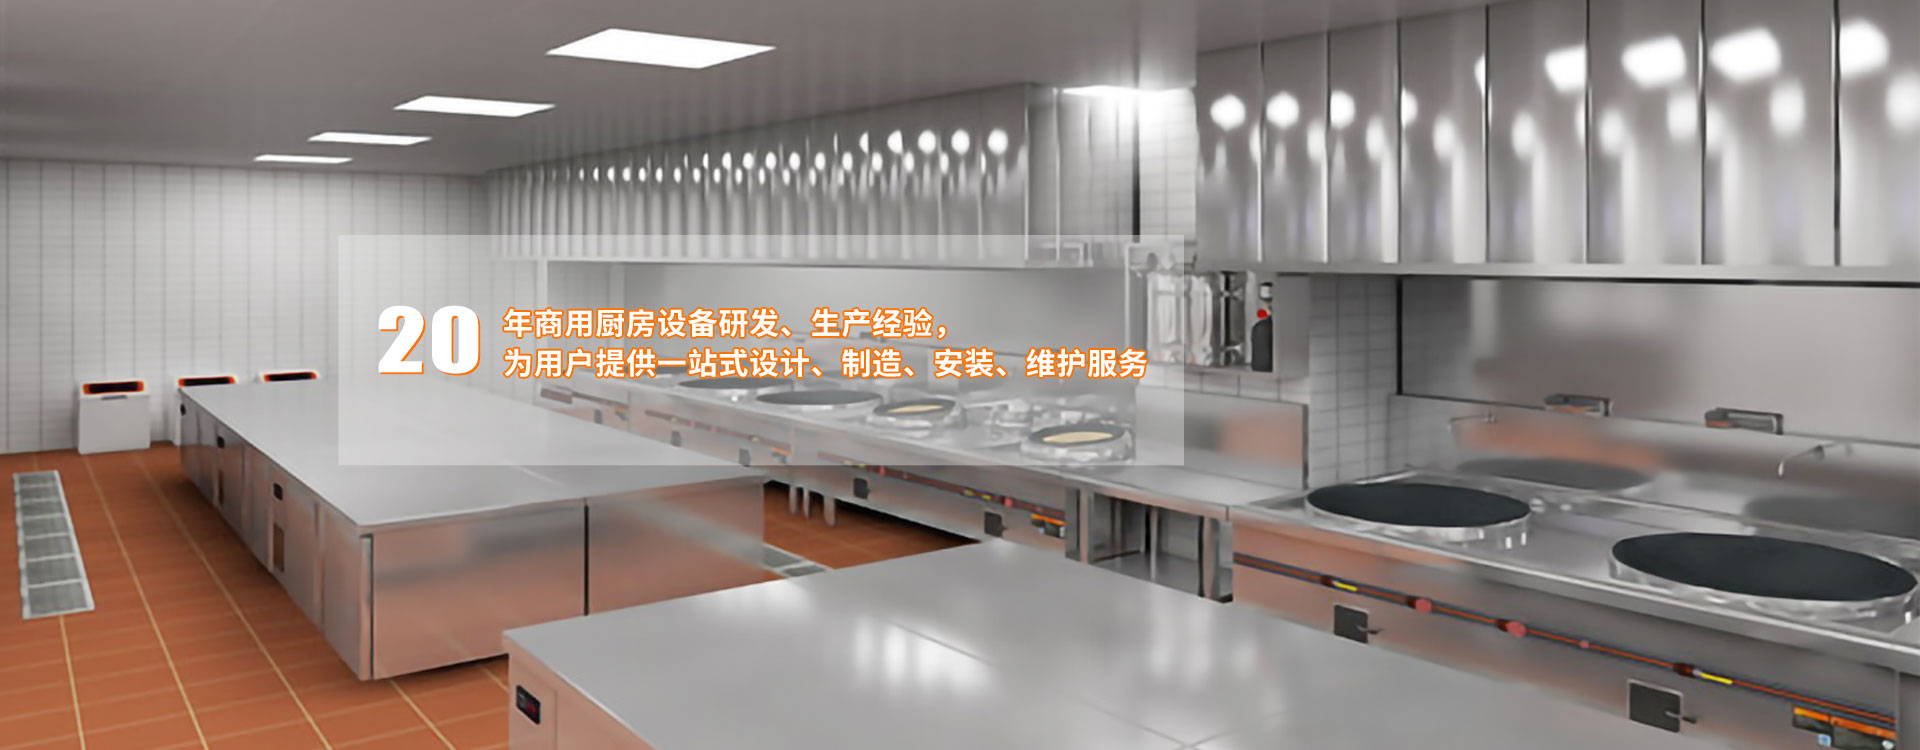 西安市华宇厨房设备制造有限责任公司